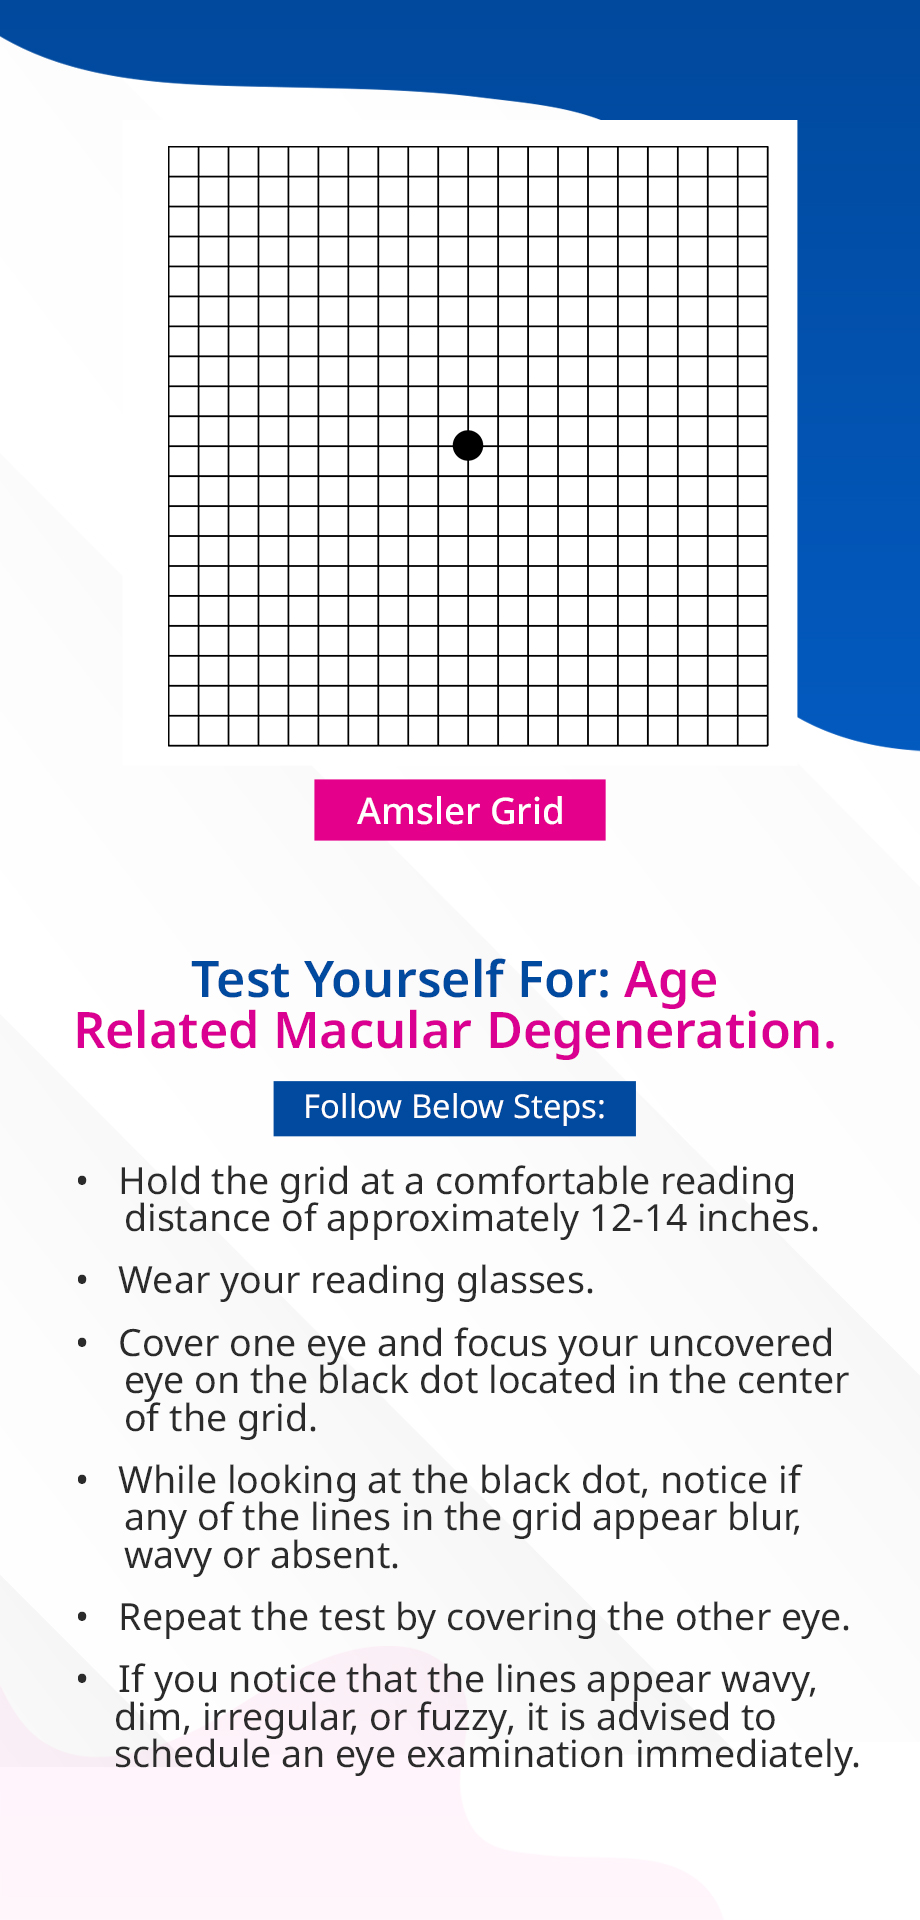 Amsler-Grid-Eye-Test-Mobile